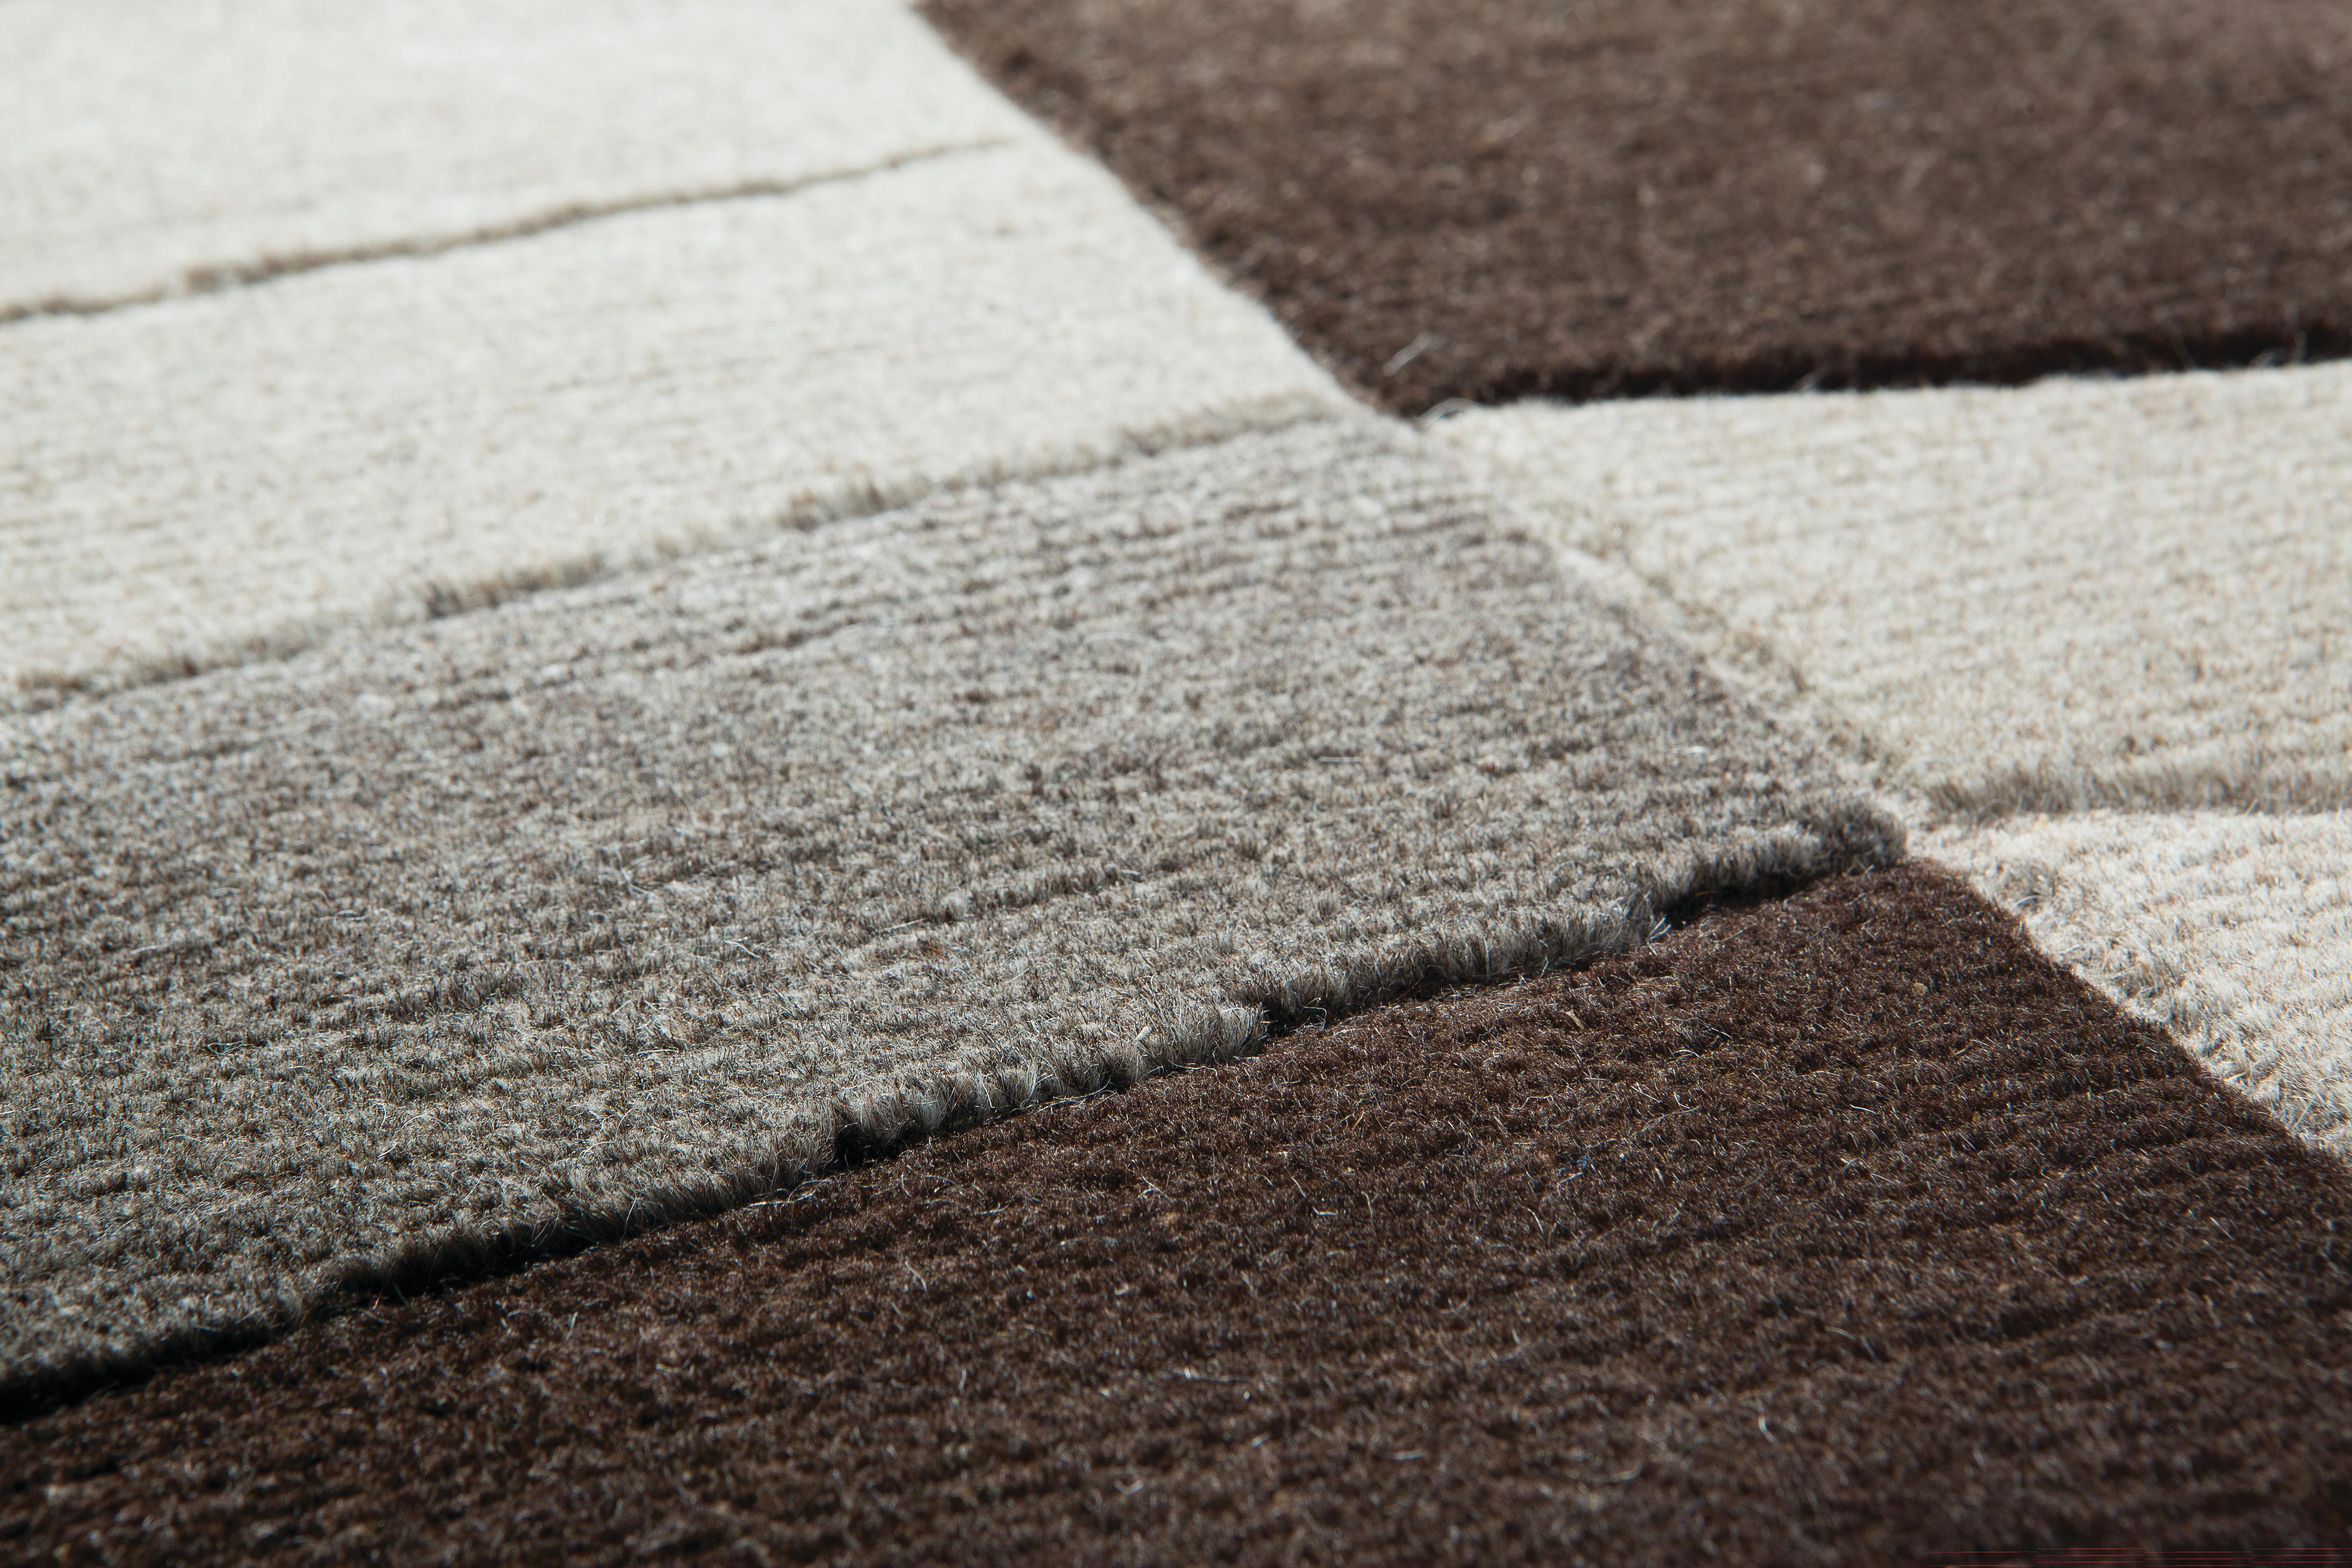 Les tapis Annapurna de Bartoli design sont noués à la main en laine non teintée de l'Himalaya, avec 60 nœuds par m²
Des traitements spéciaux sont réservés à ce type de matériau, qui donne une consistance et des couleurs si particulières
Inspiré